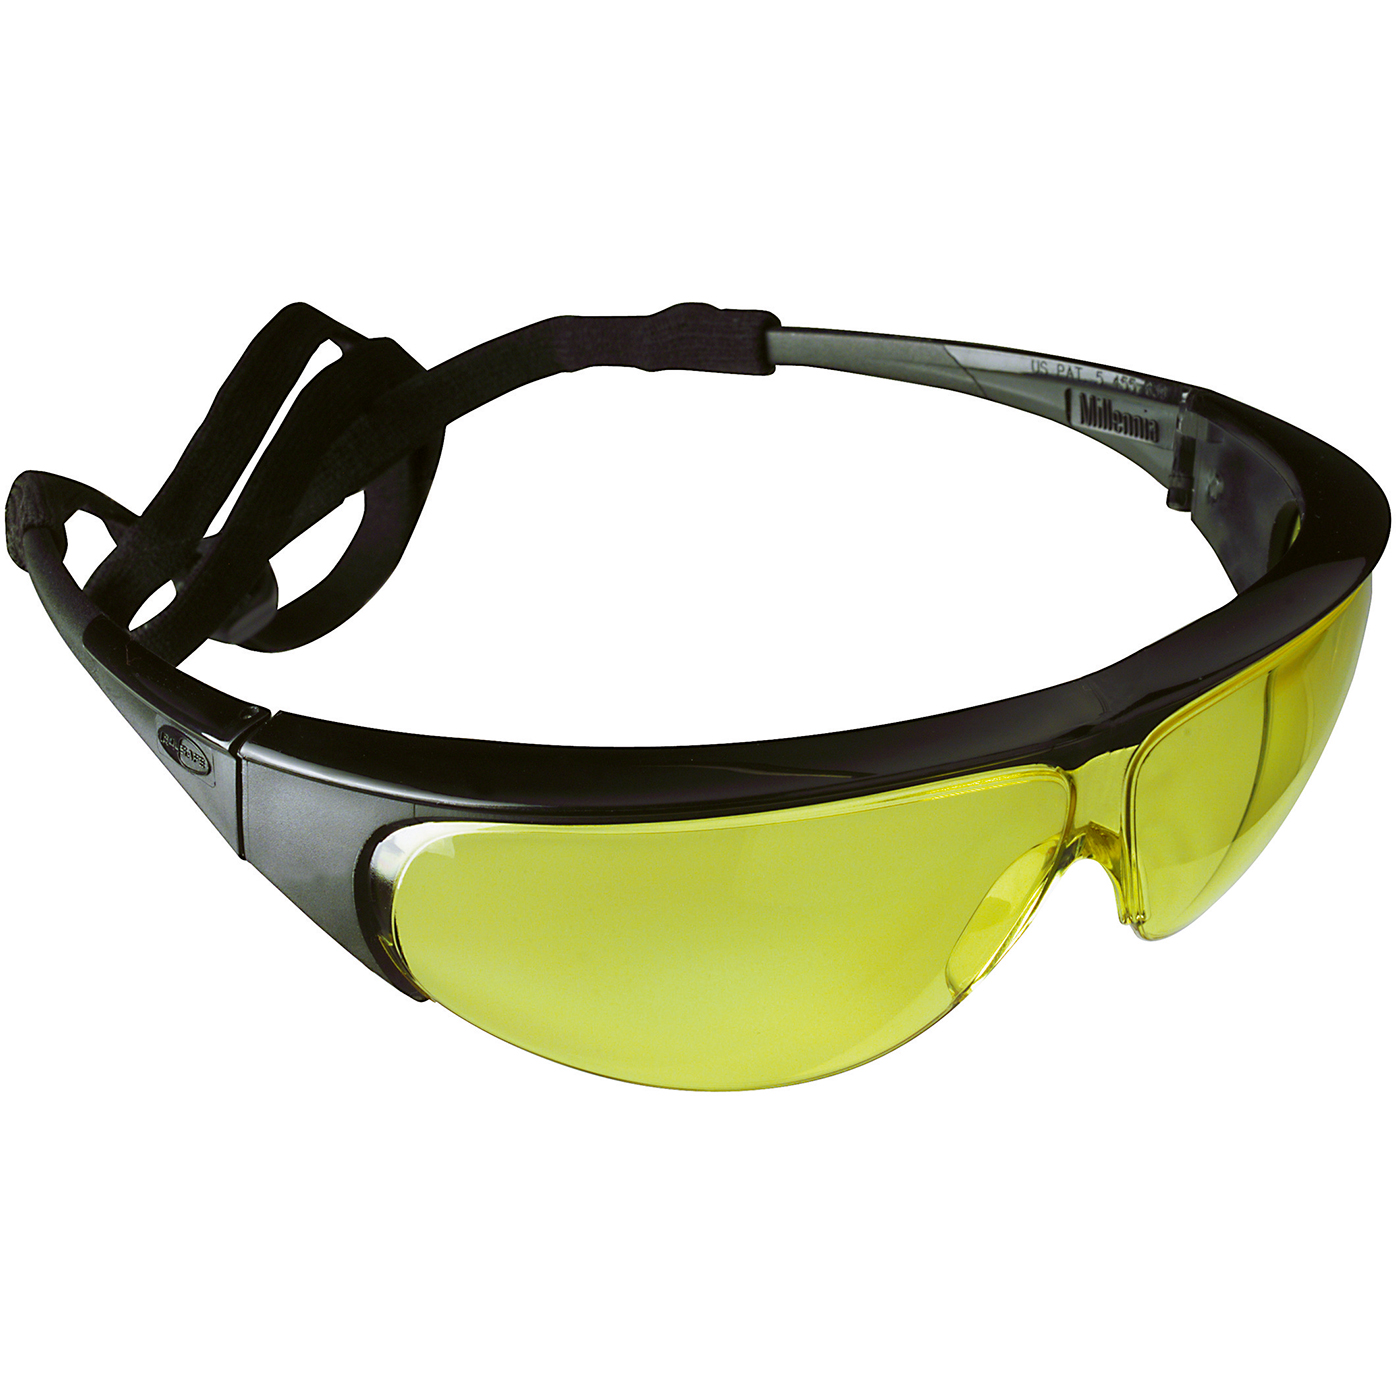 Sperian Millennia Schutzbrille, Scheibe gelb, Fassung schwarz - 1 Stück